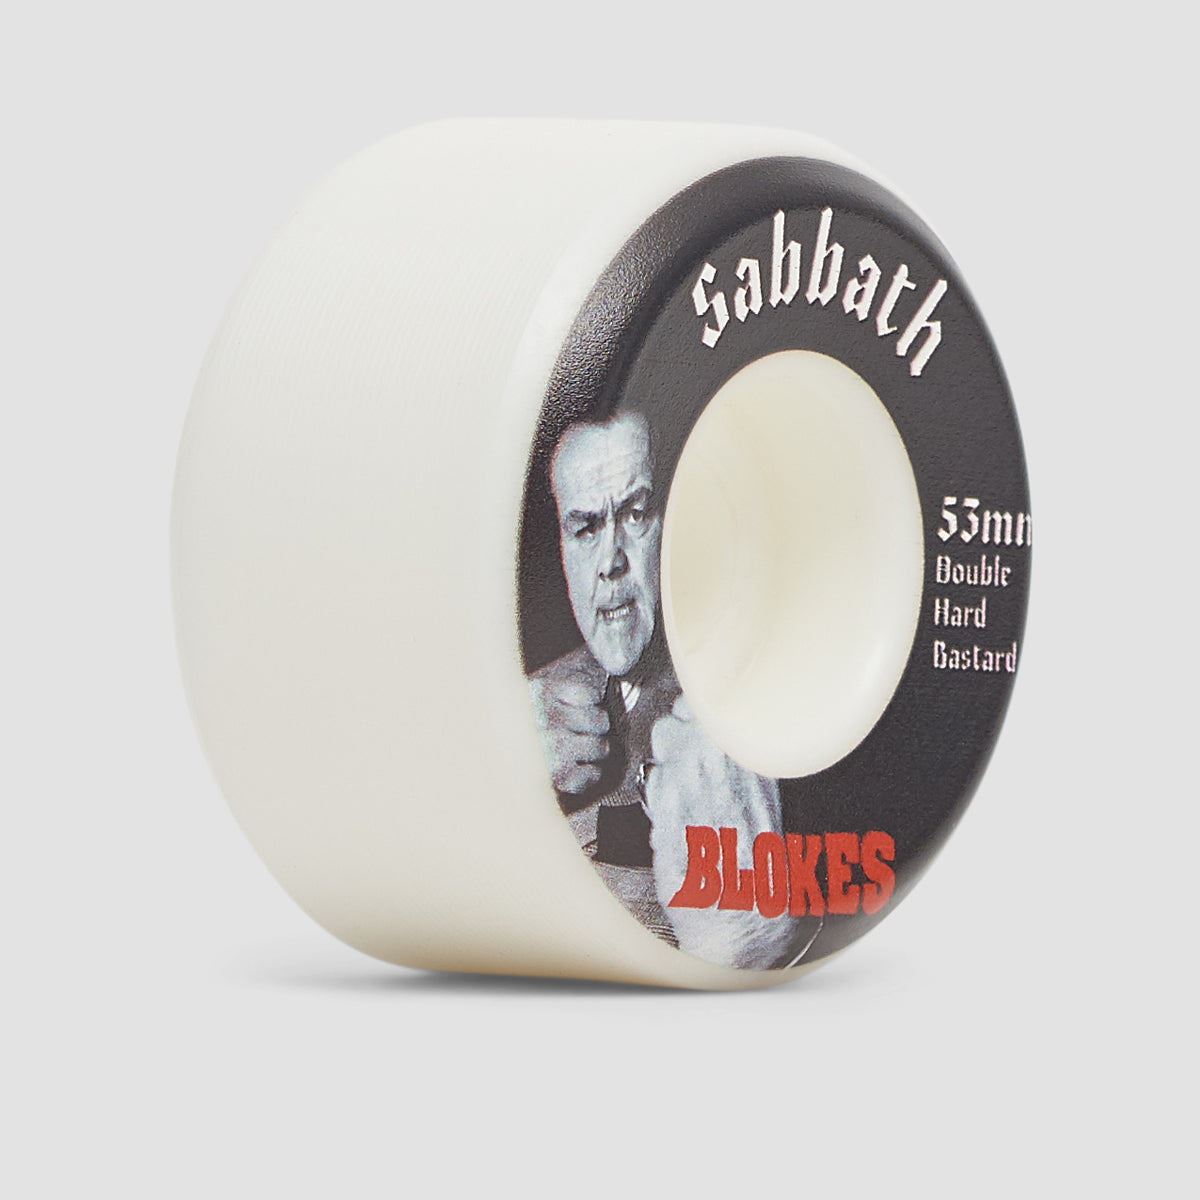 Sabbath Blokes Conical DHB 101A Skateboard Wheels 53mm